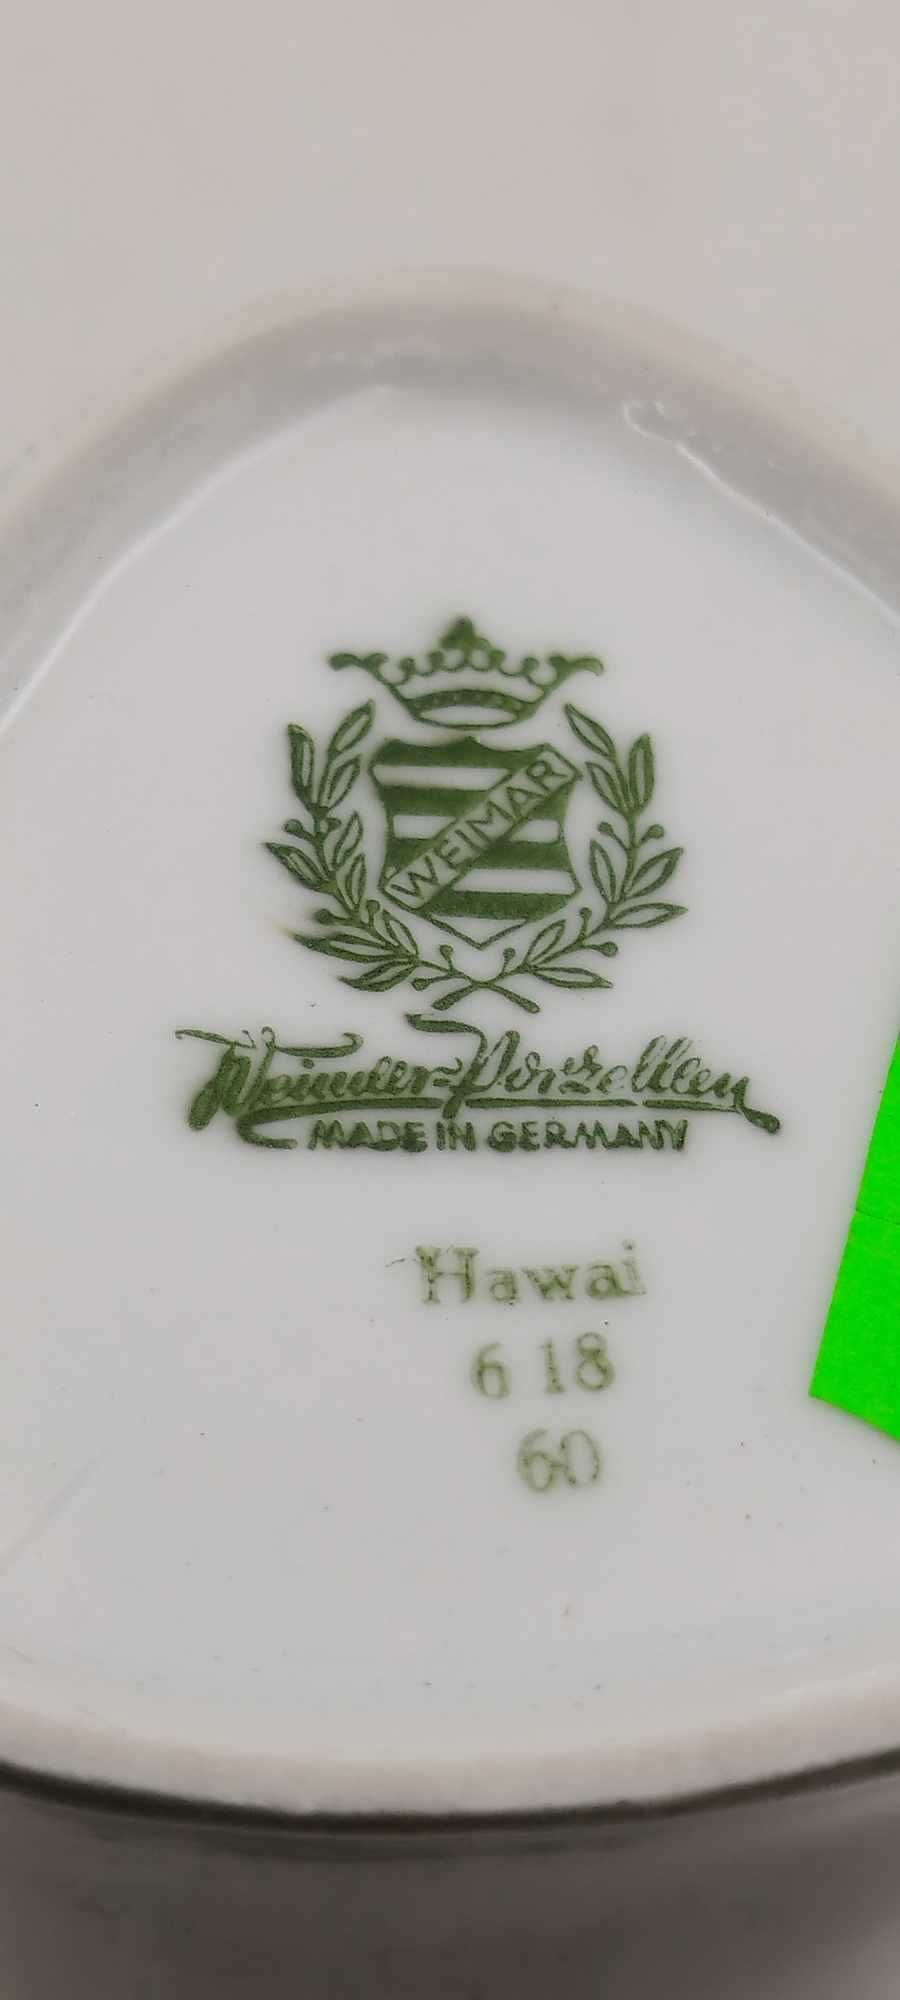 Wazon 21,5cm Weimar Hawai wzór.618 jasny oliwkowy vintage gdr retro